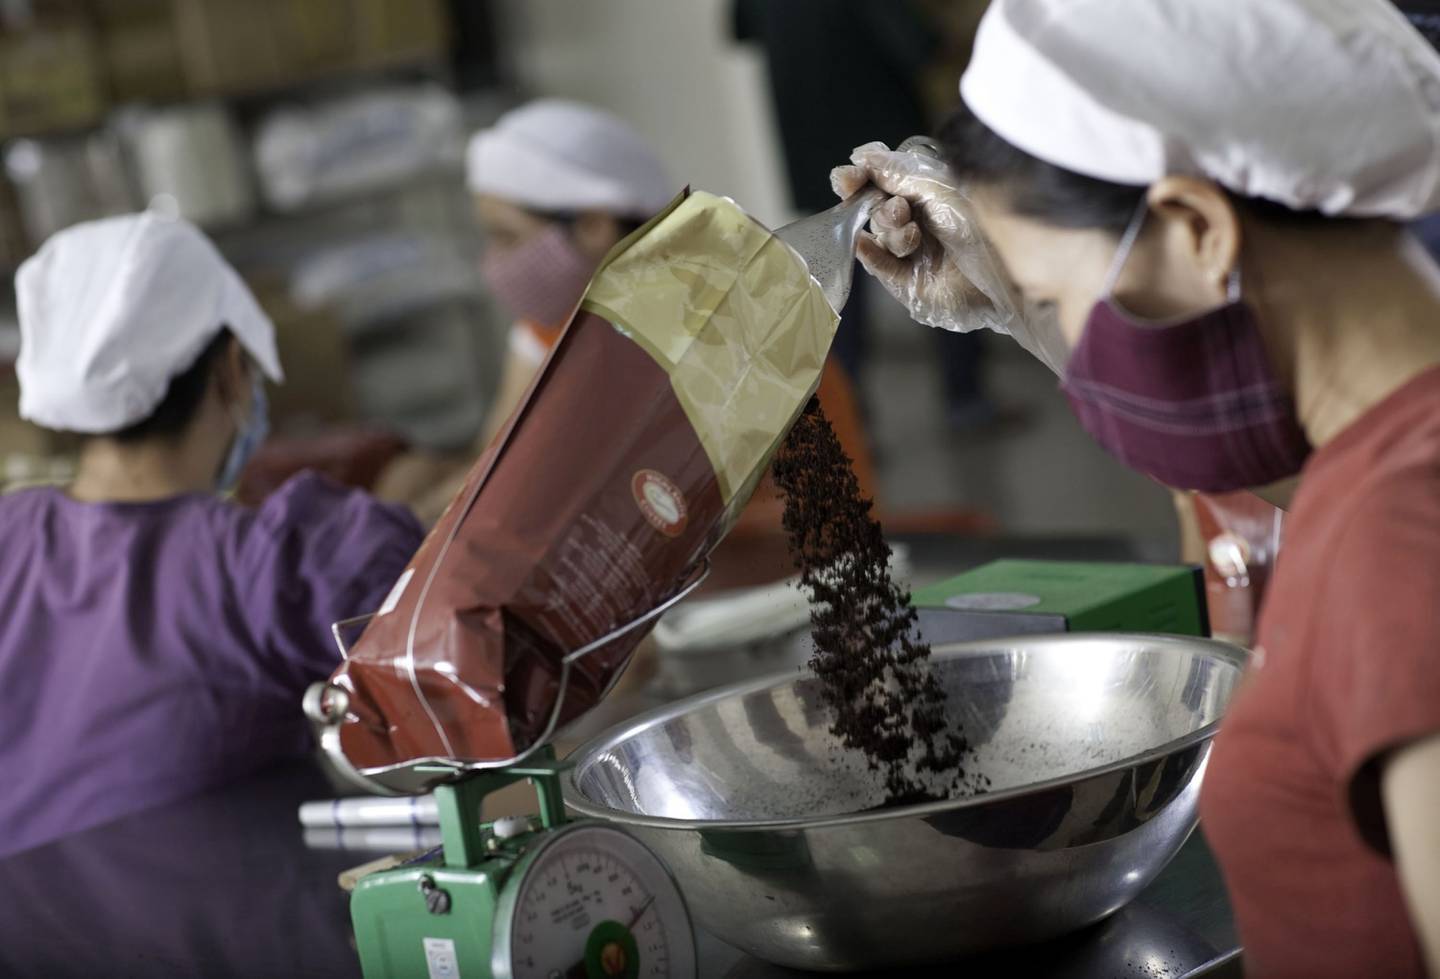 Un trabajador embolsa y pesa granos de robusta tostados y molidos para su distribución en la planta de procesamiento de café Highlands en Ciudad Ho Chi Minh, Vietnam, el viernes 1 de octubre de 2010.  Fotógrafo: Jeff Holt/Bloomberg